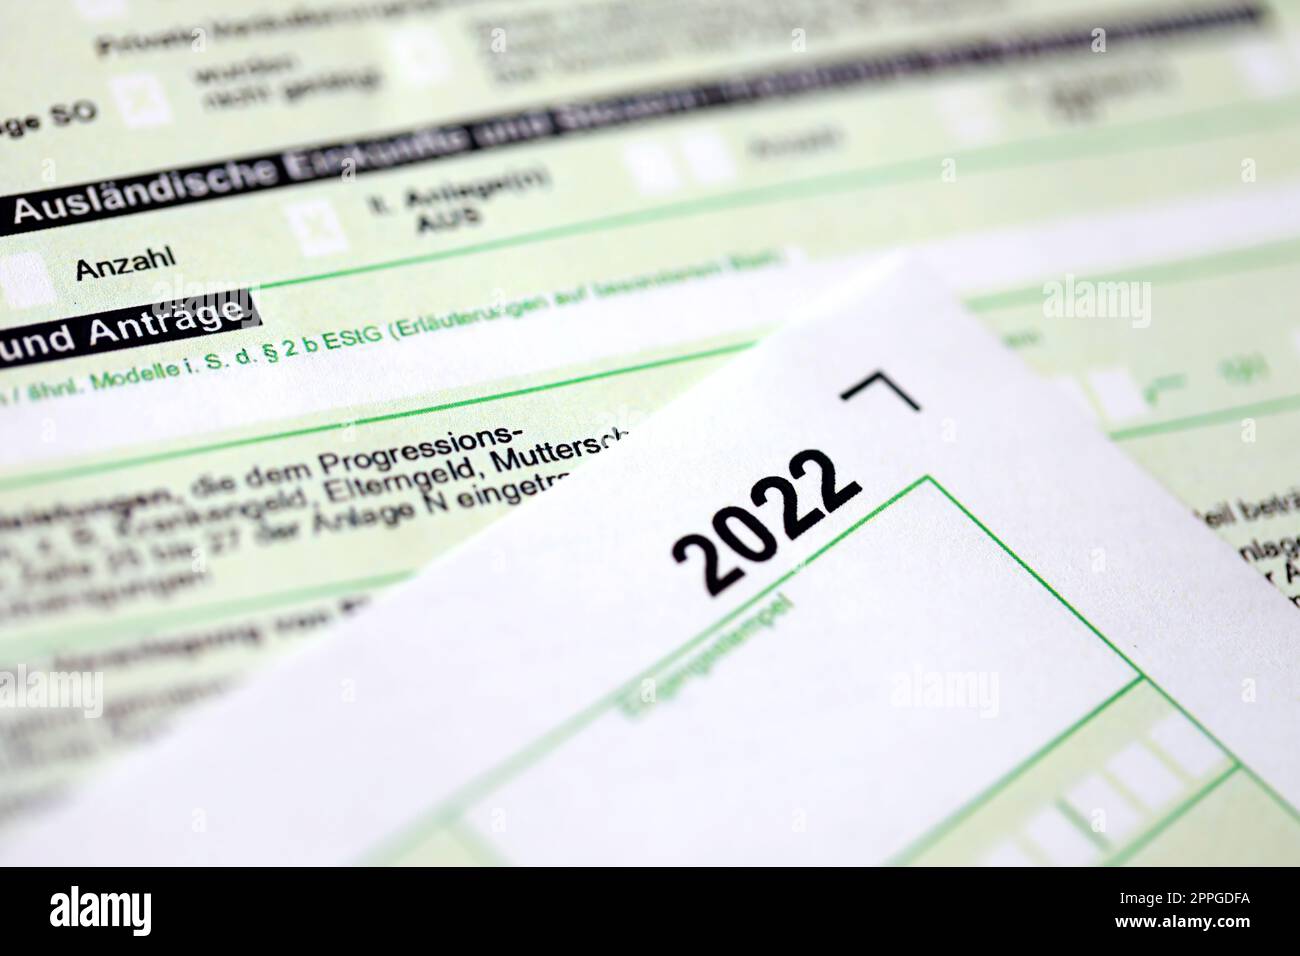 Deutsches jährliches Einkommensteuererklärungsformular für 2022-Jahres-Nahaufnahme. Das Konzept der Steuermeldung in Deutschland Stockfoto